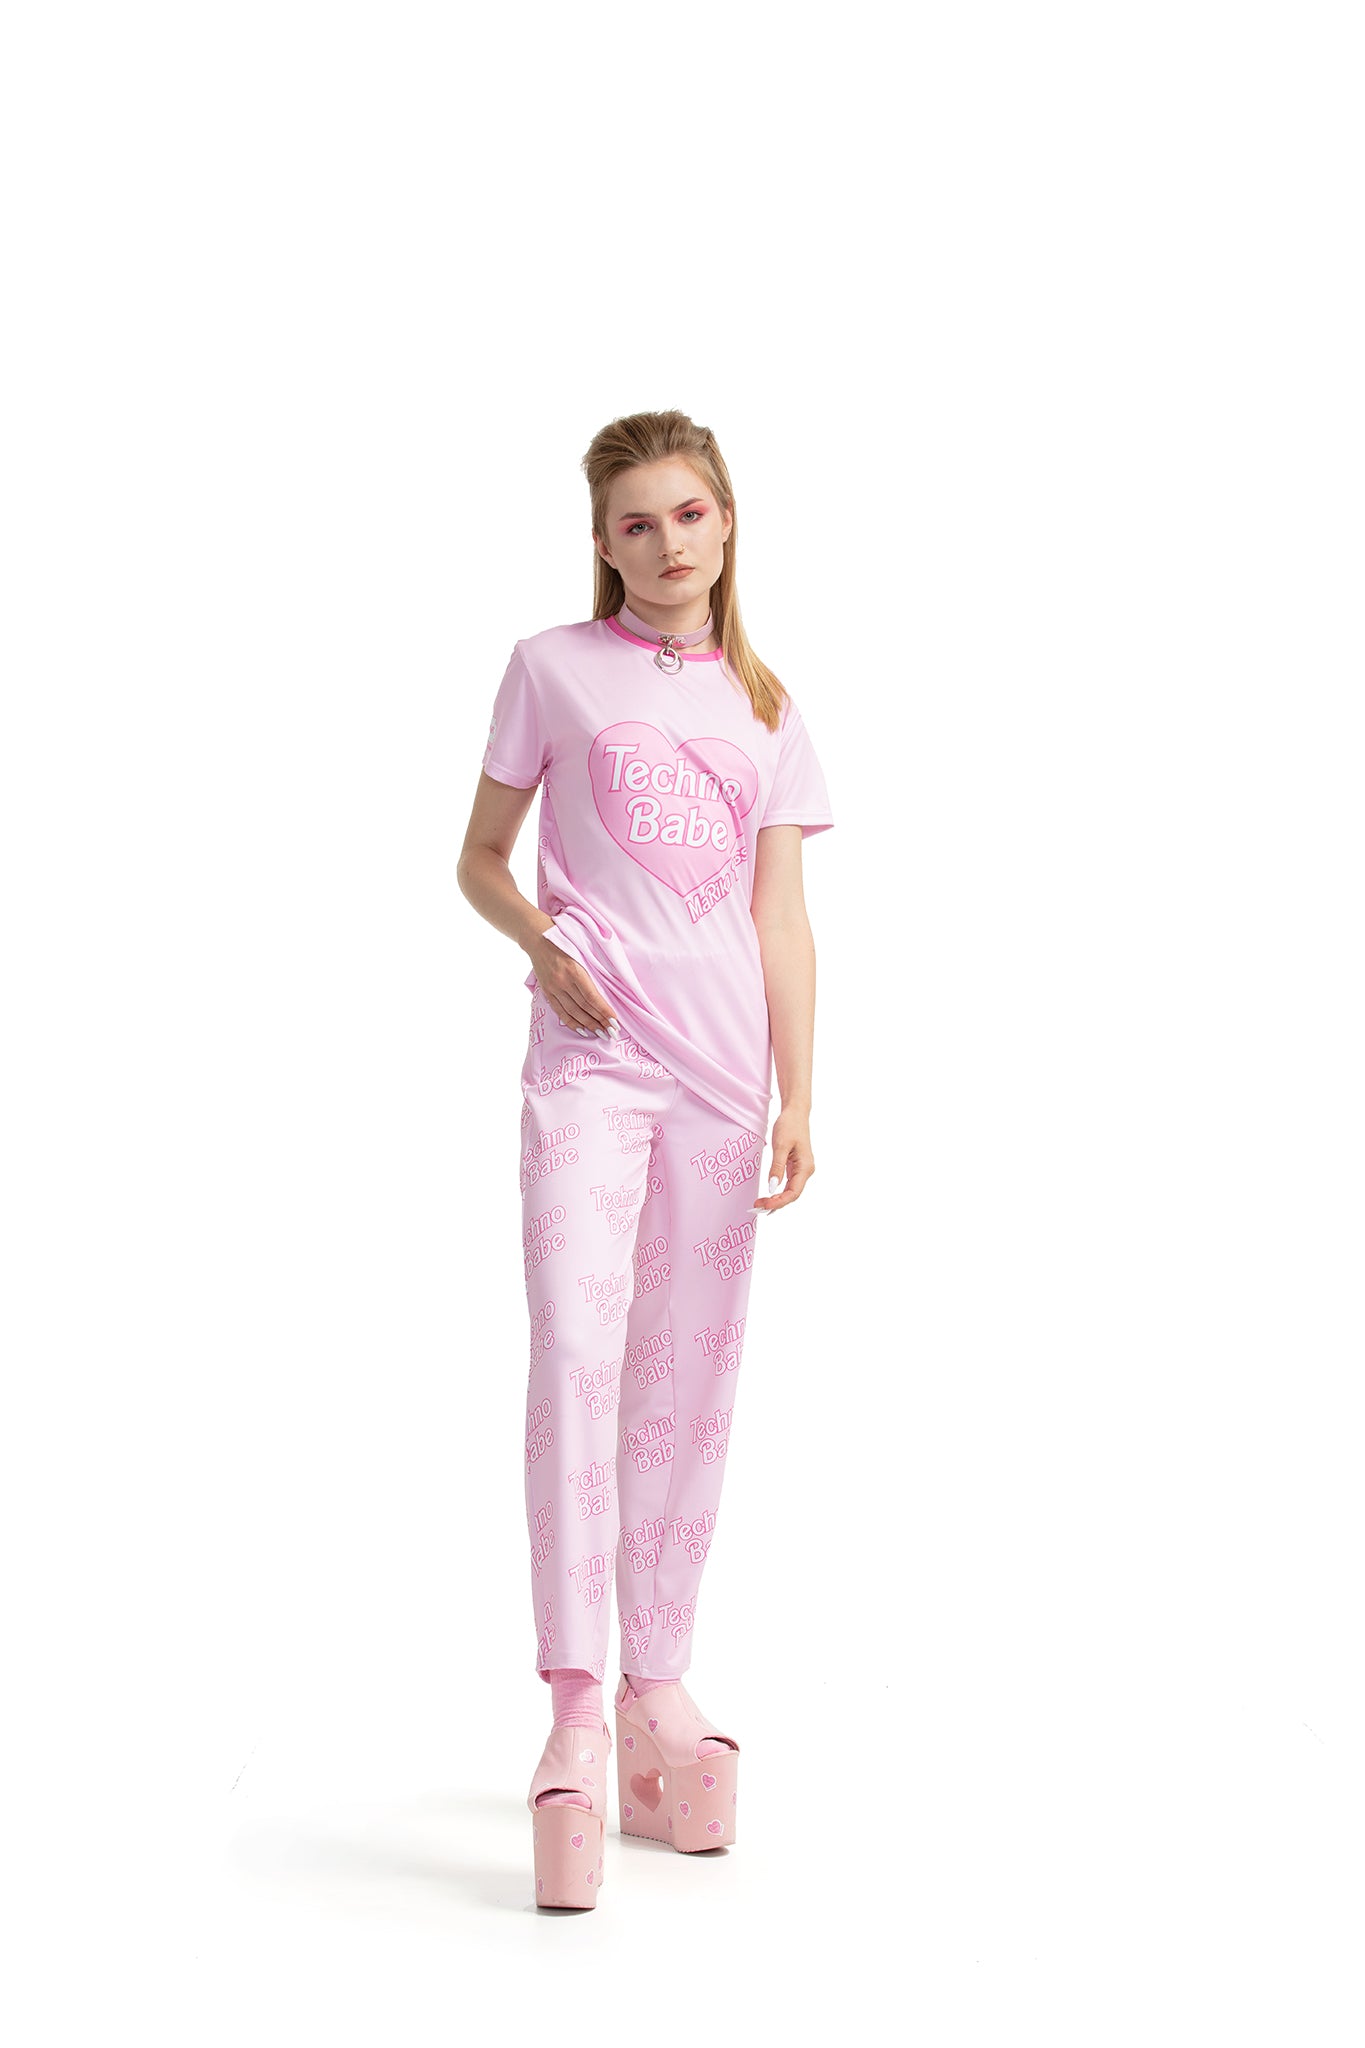 Techno Babe [Pink] – T-Shirt mit normaler Passform und seitlichen Schnitten